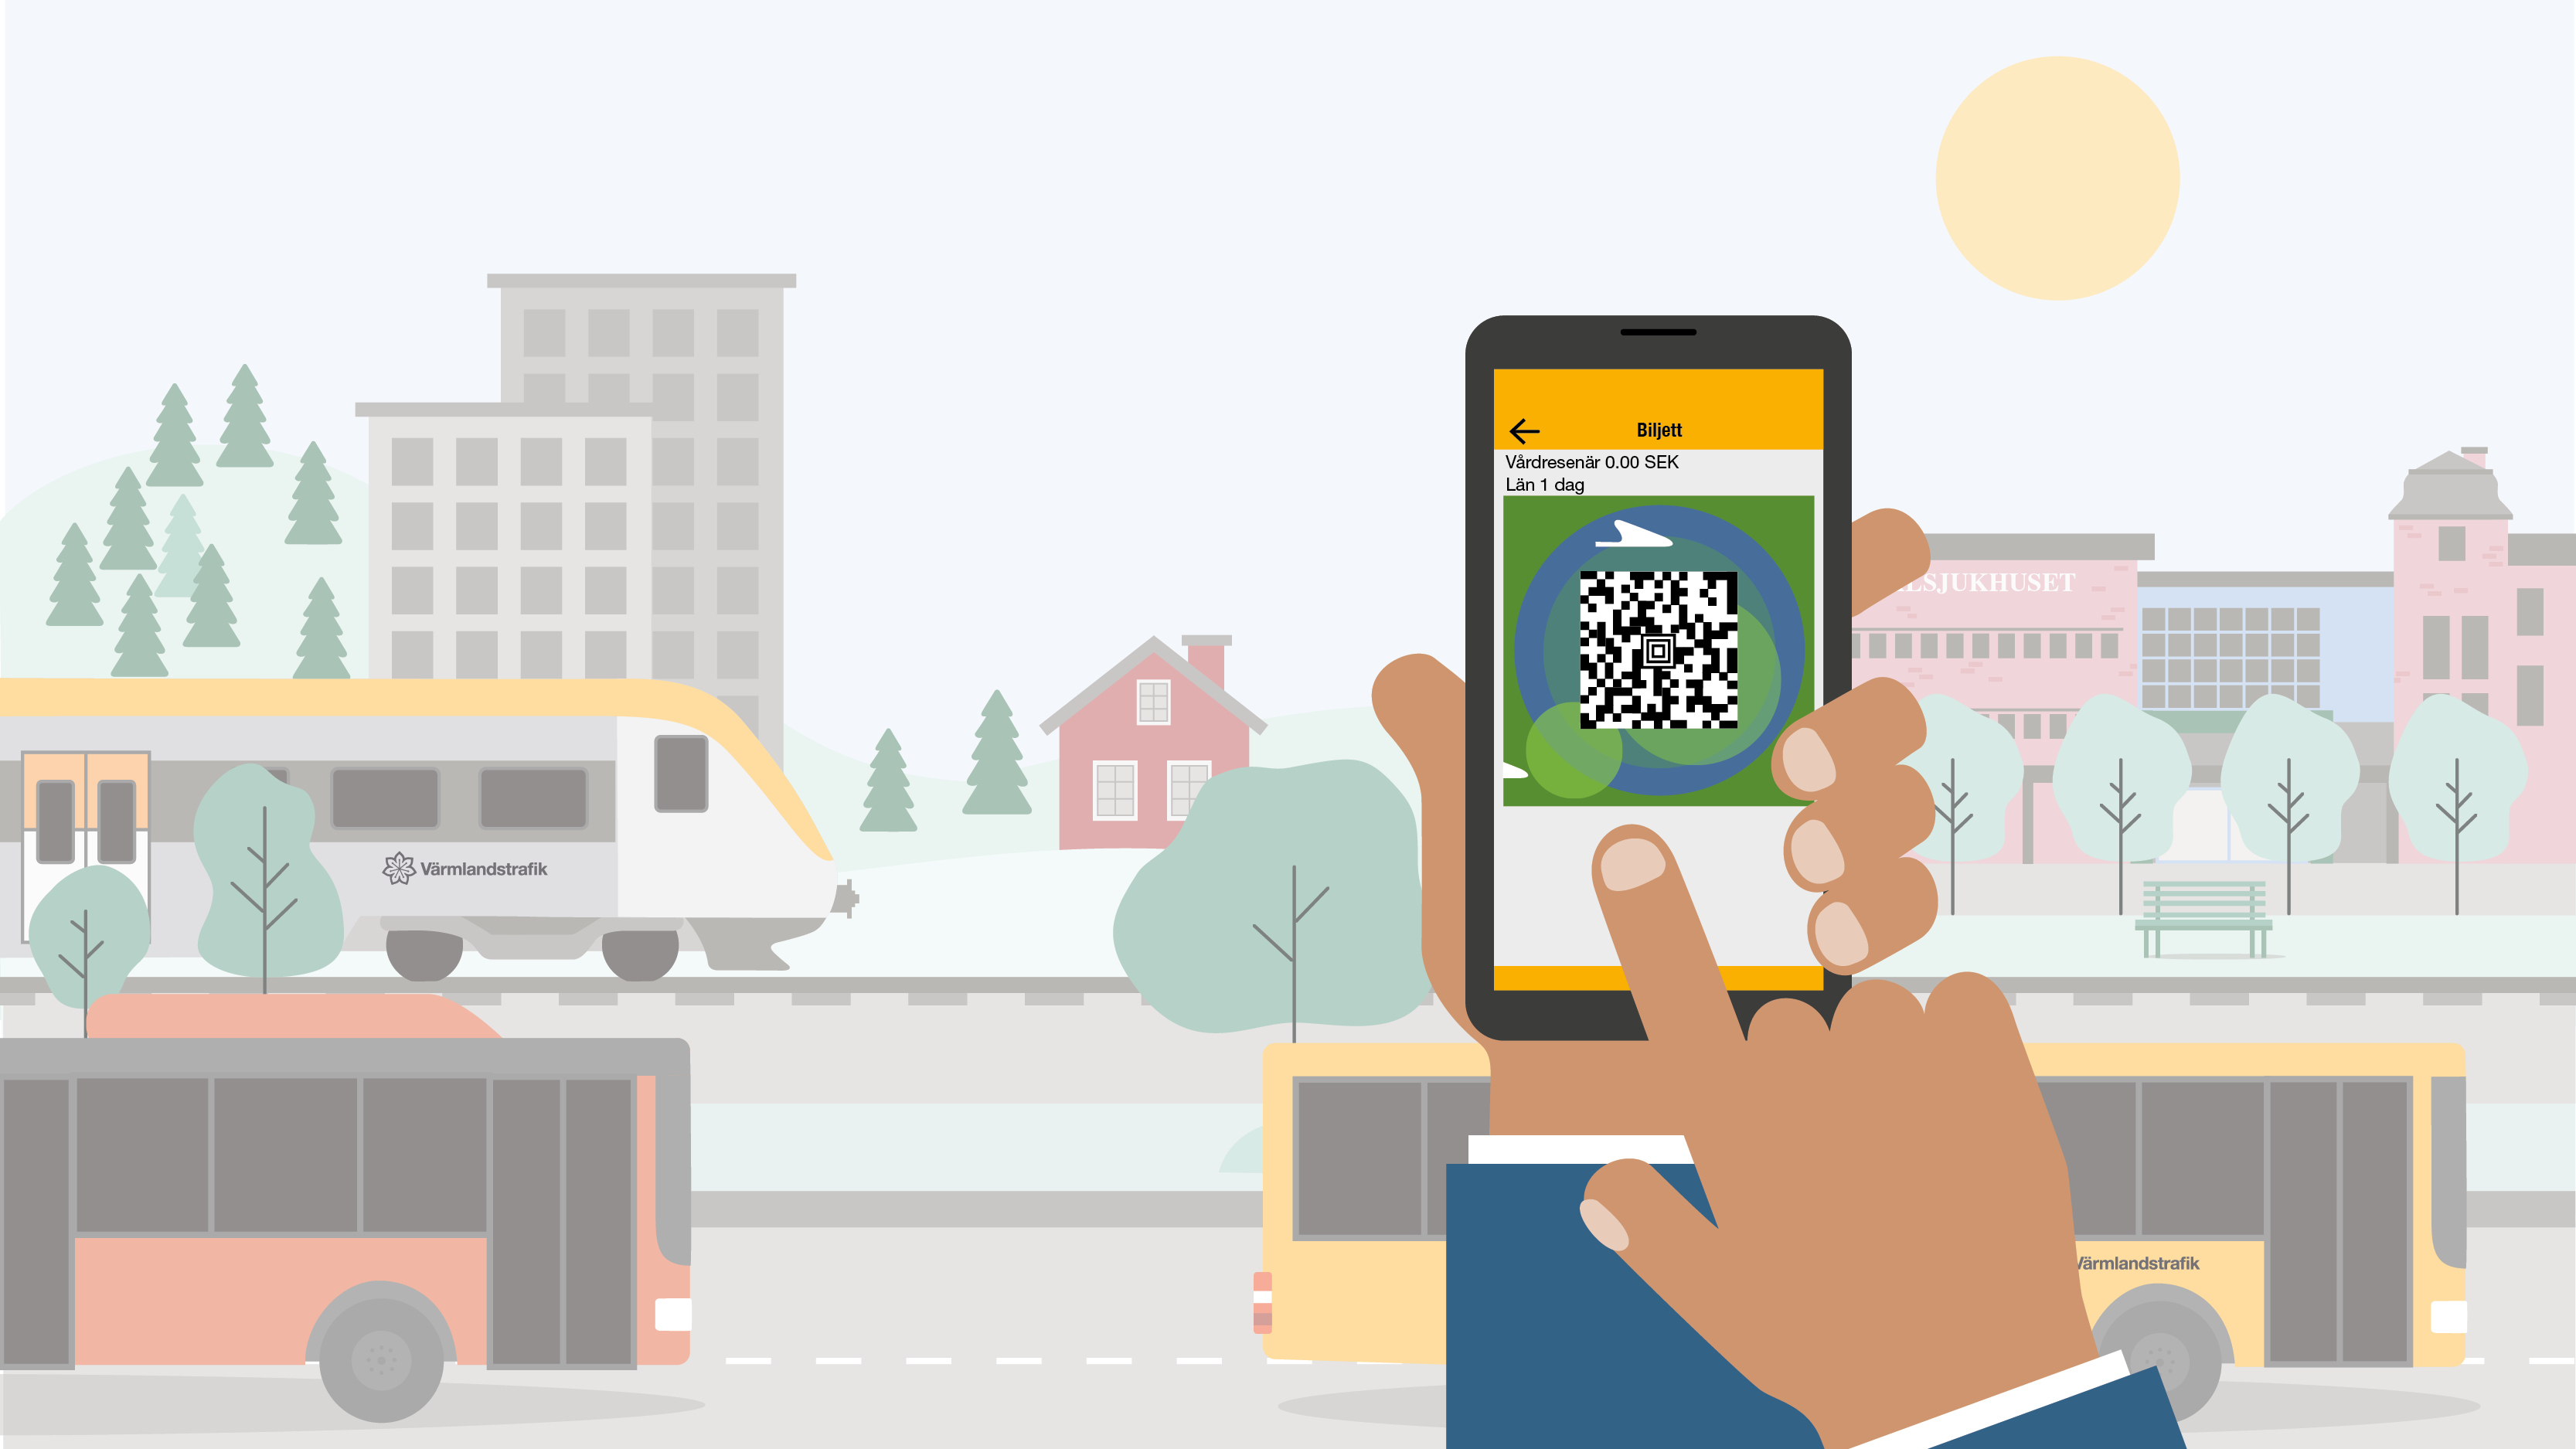 Illustrerad bild med en hand som håller upp en mobil med appbiljett på skärmen. Bakom handen rullar Värmlandstrafiks bussar och tåg i en värmländsk miljö.